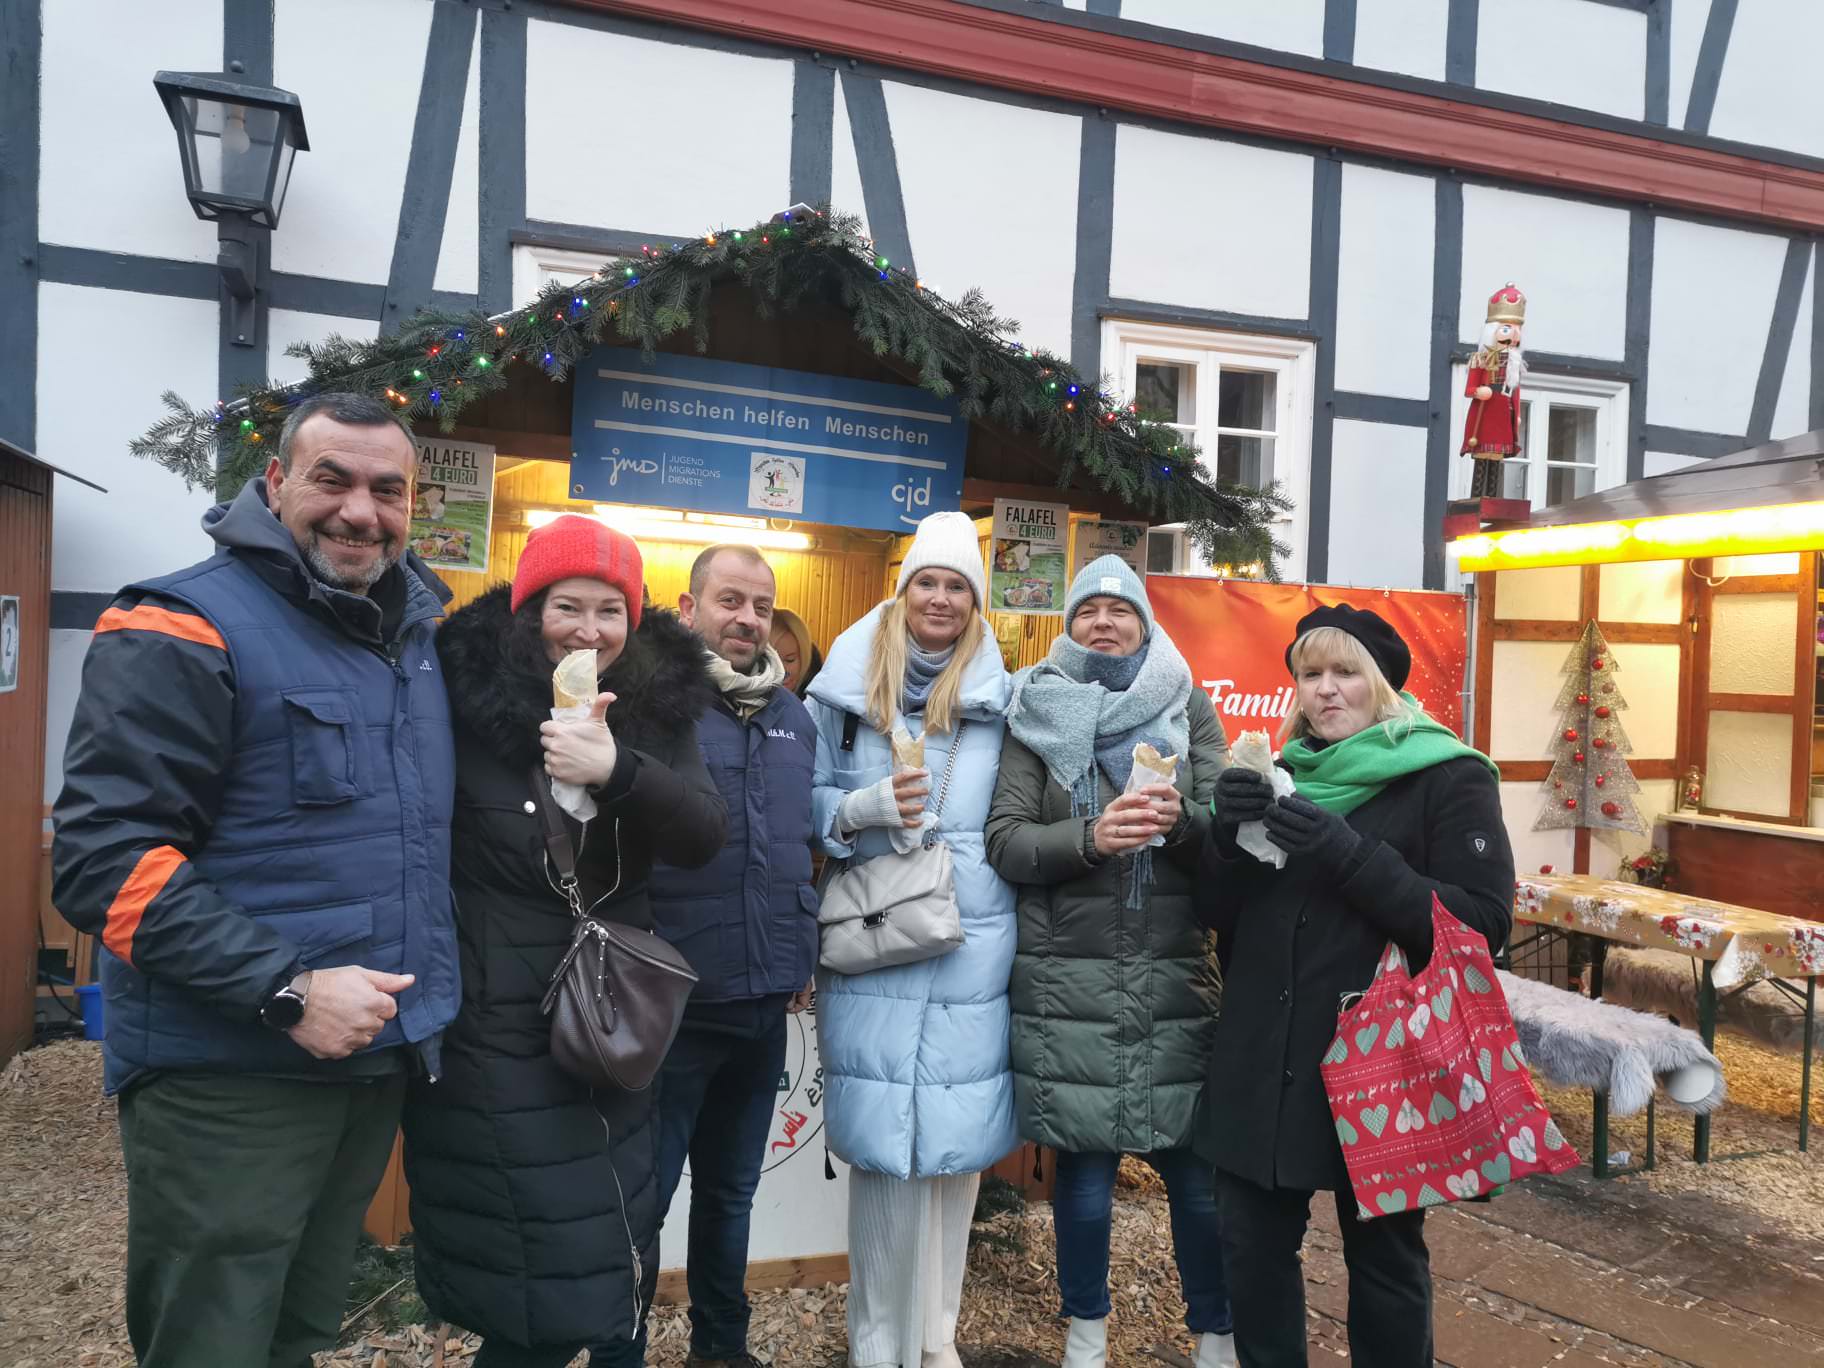 بالصور || جمعية ناس بتساعد ناس في مدينة نينبورغ الالمانيه تشارك في بازار عيد الميلاد السنوي